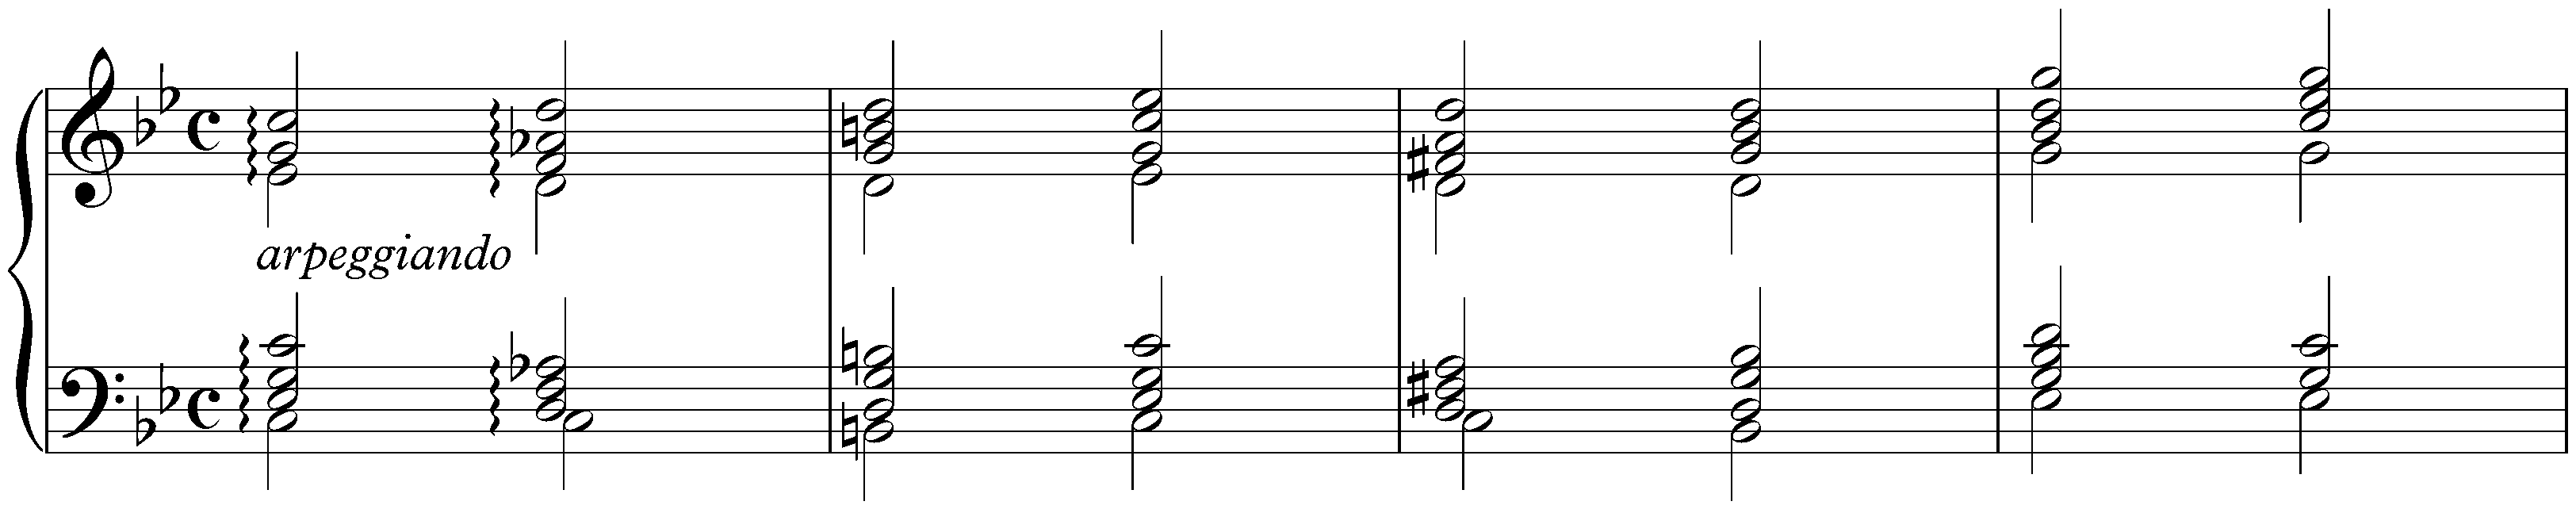 Prelude (Fantasia) in C minor, BWV 921